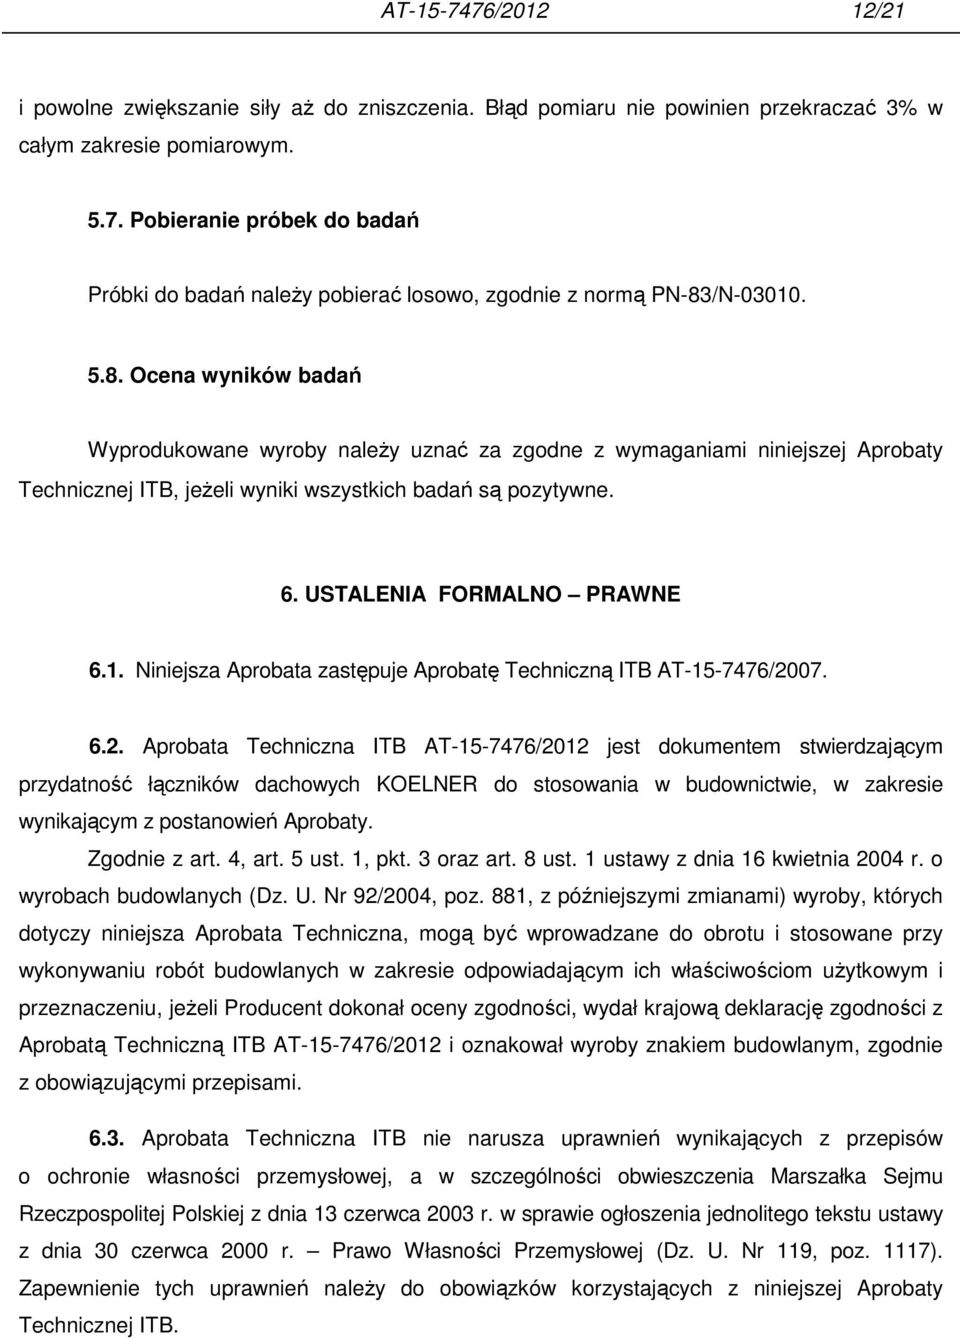 Niniejsza Aprobata zastępuje Aprobatę Techniczną ITB AT-15-7476/20